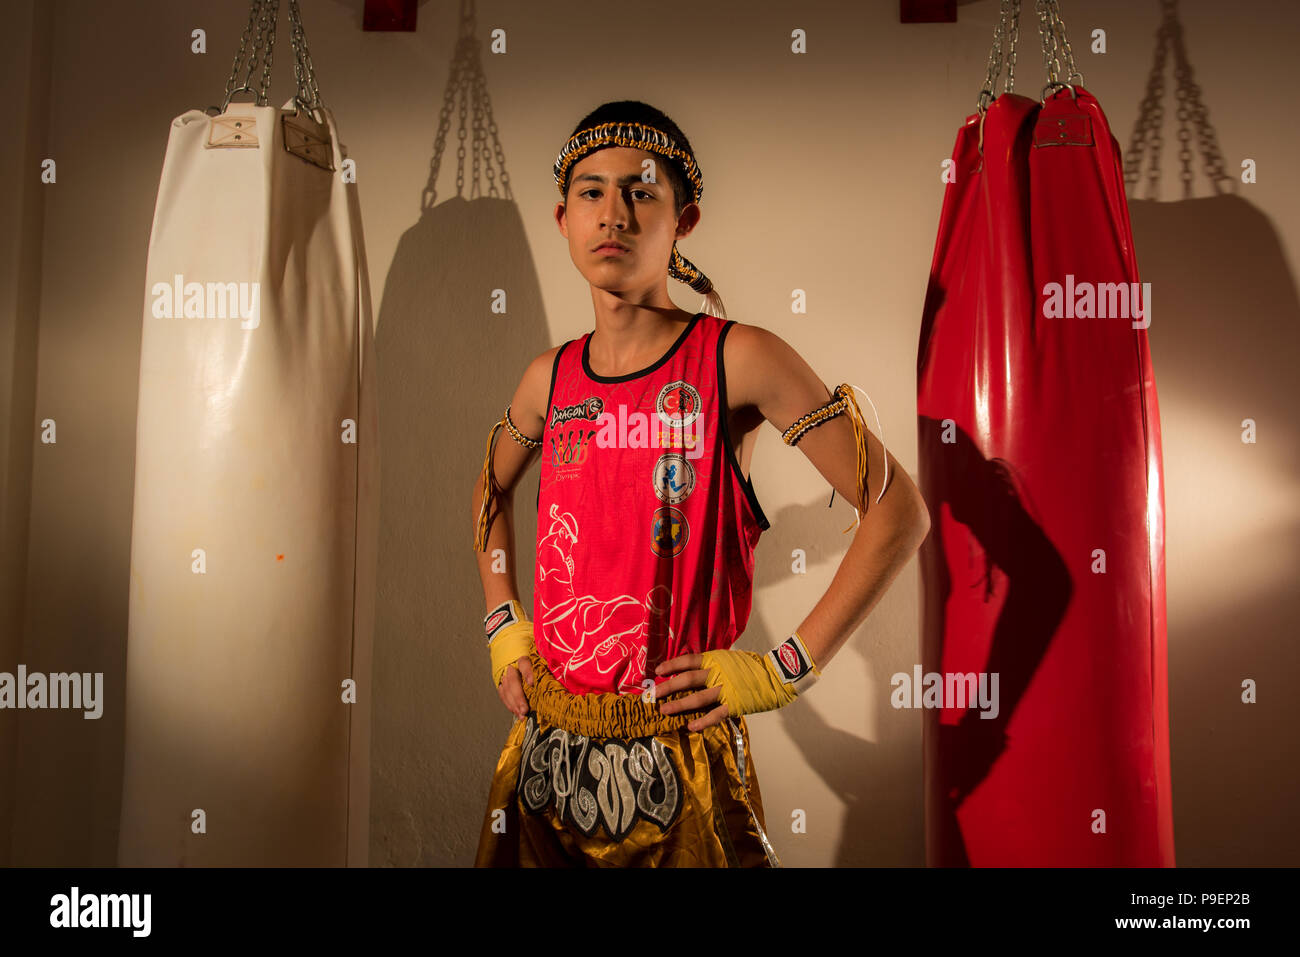 Jüngeres Kind Muay Thai KKck boxer Vorbereitung für die UFC, MMA, K-1, HERRLICHKEIT Käfig Kampf Stockfoto